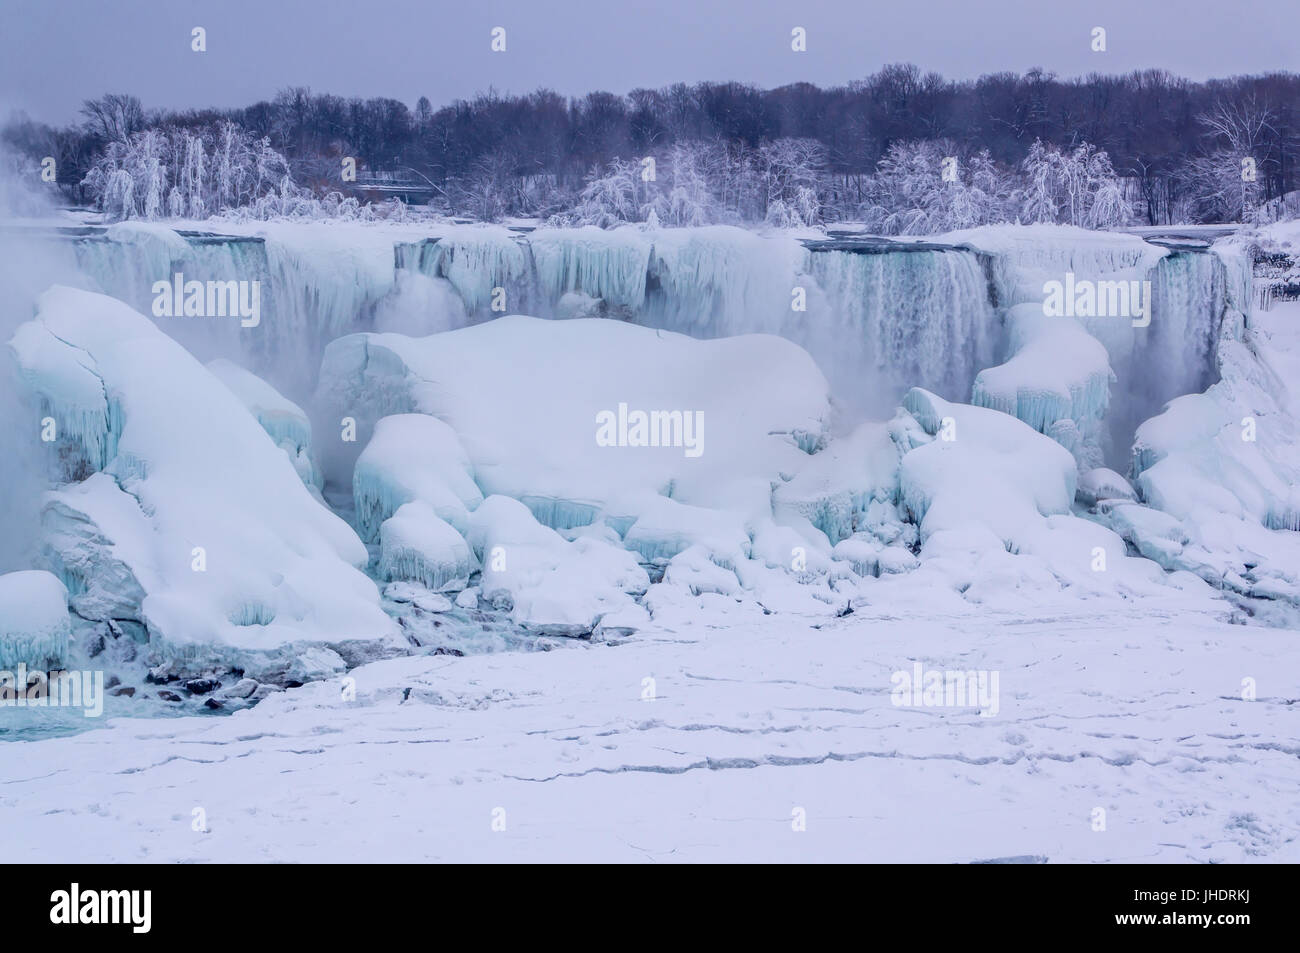 Cascate del Niagara in inverno, American Falls coperta da ghiaccio e neve. Foto Stock